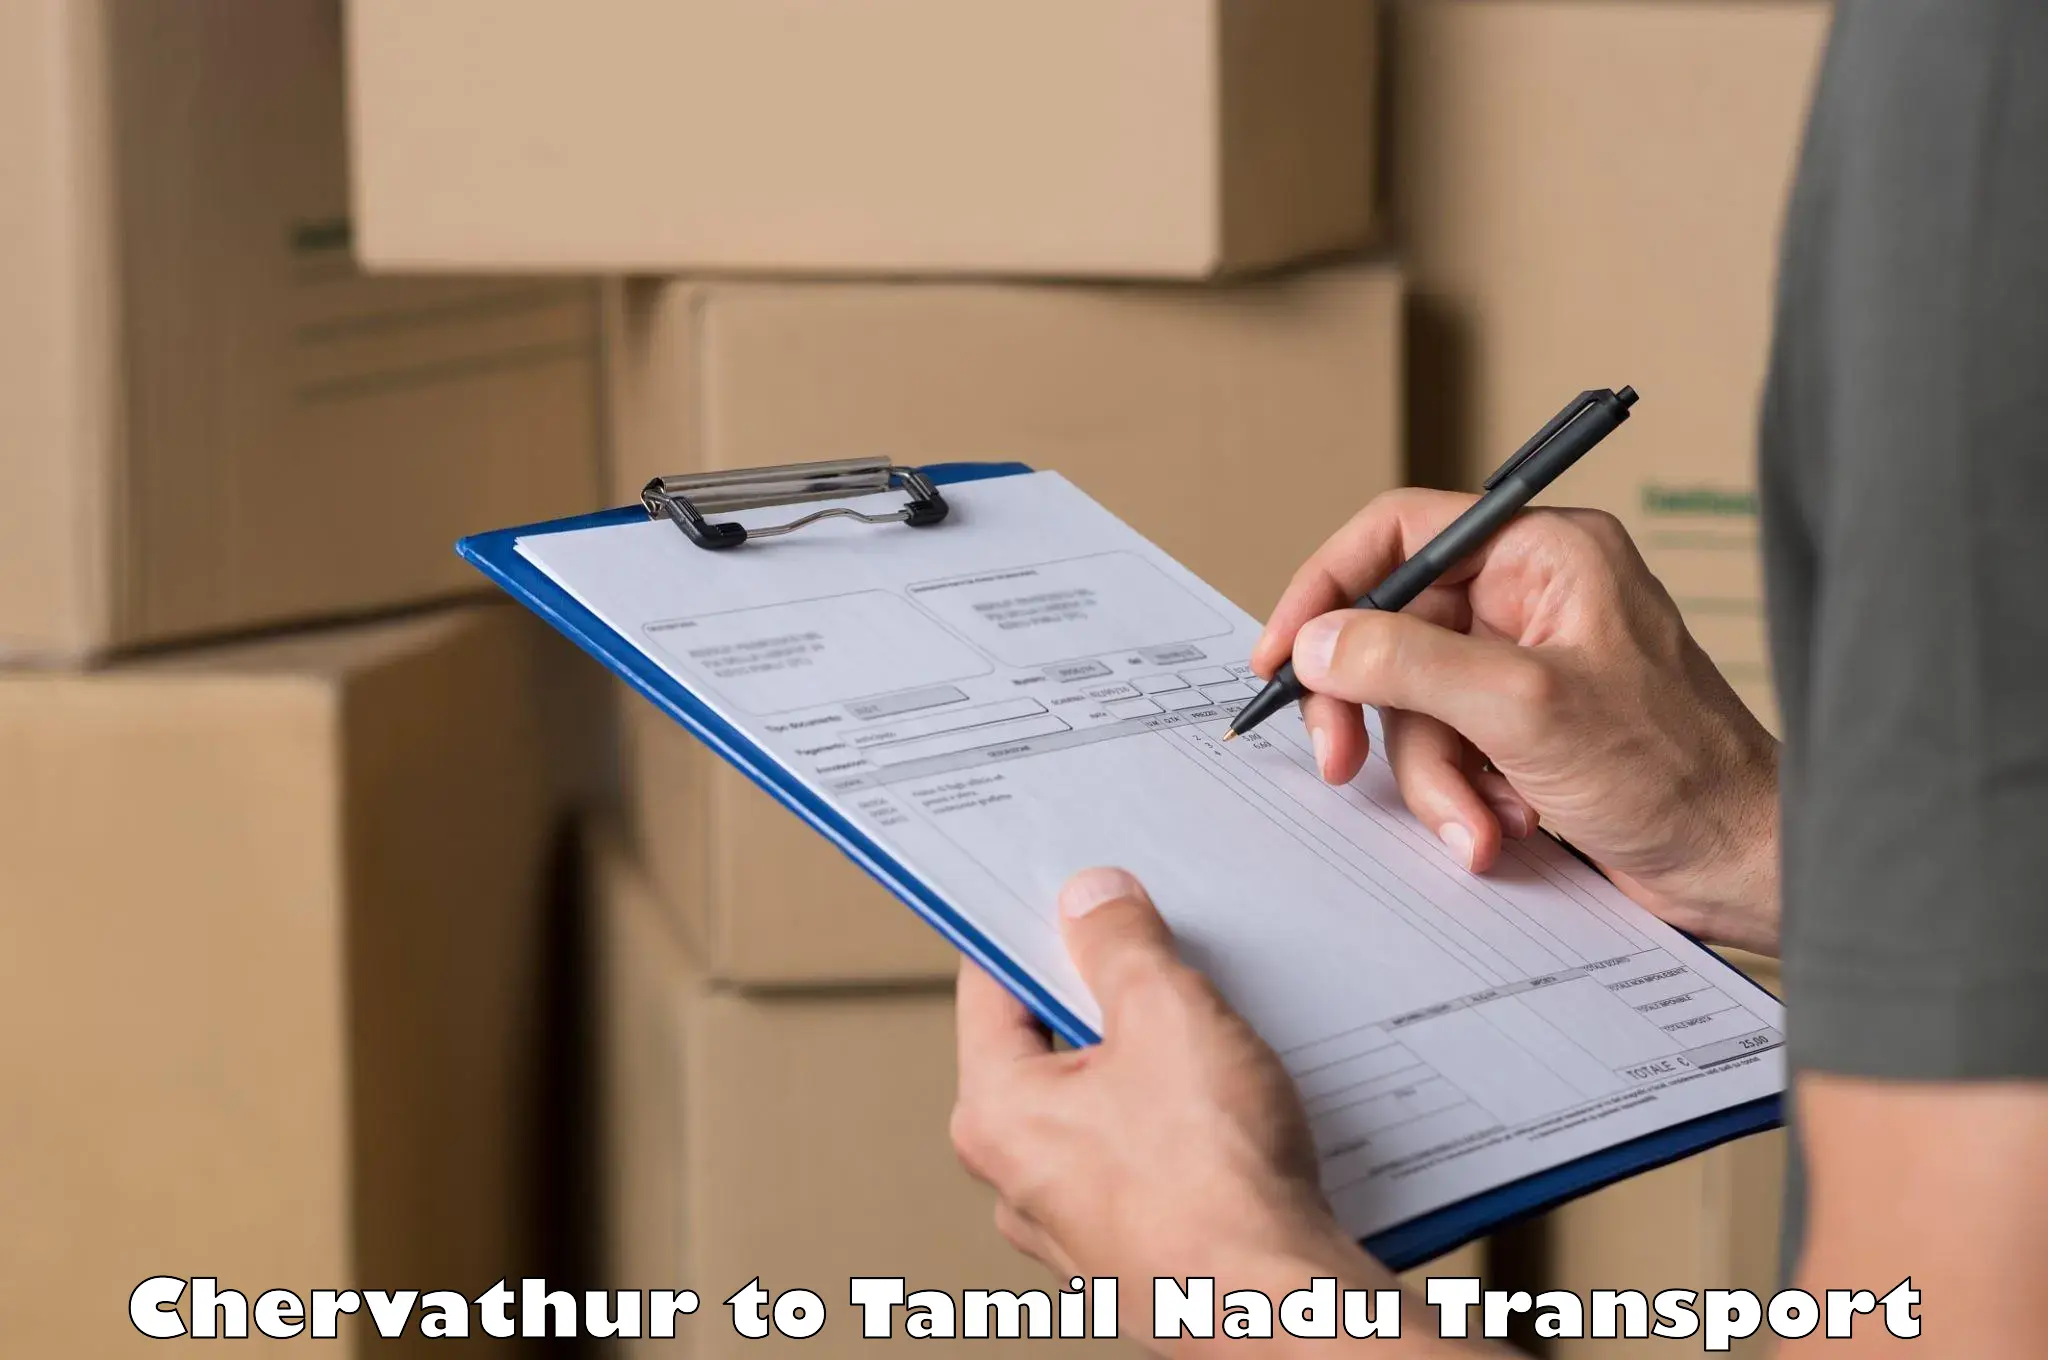 Shipping services Chervathur to Tiruturaipundi